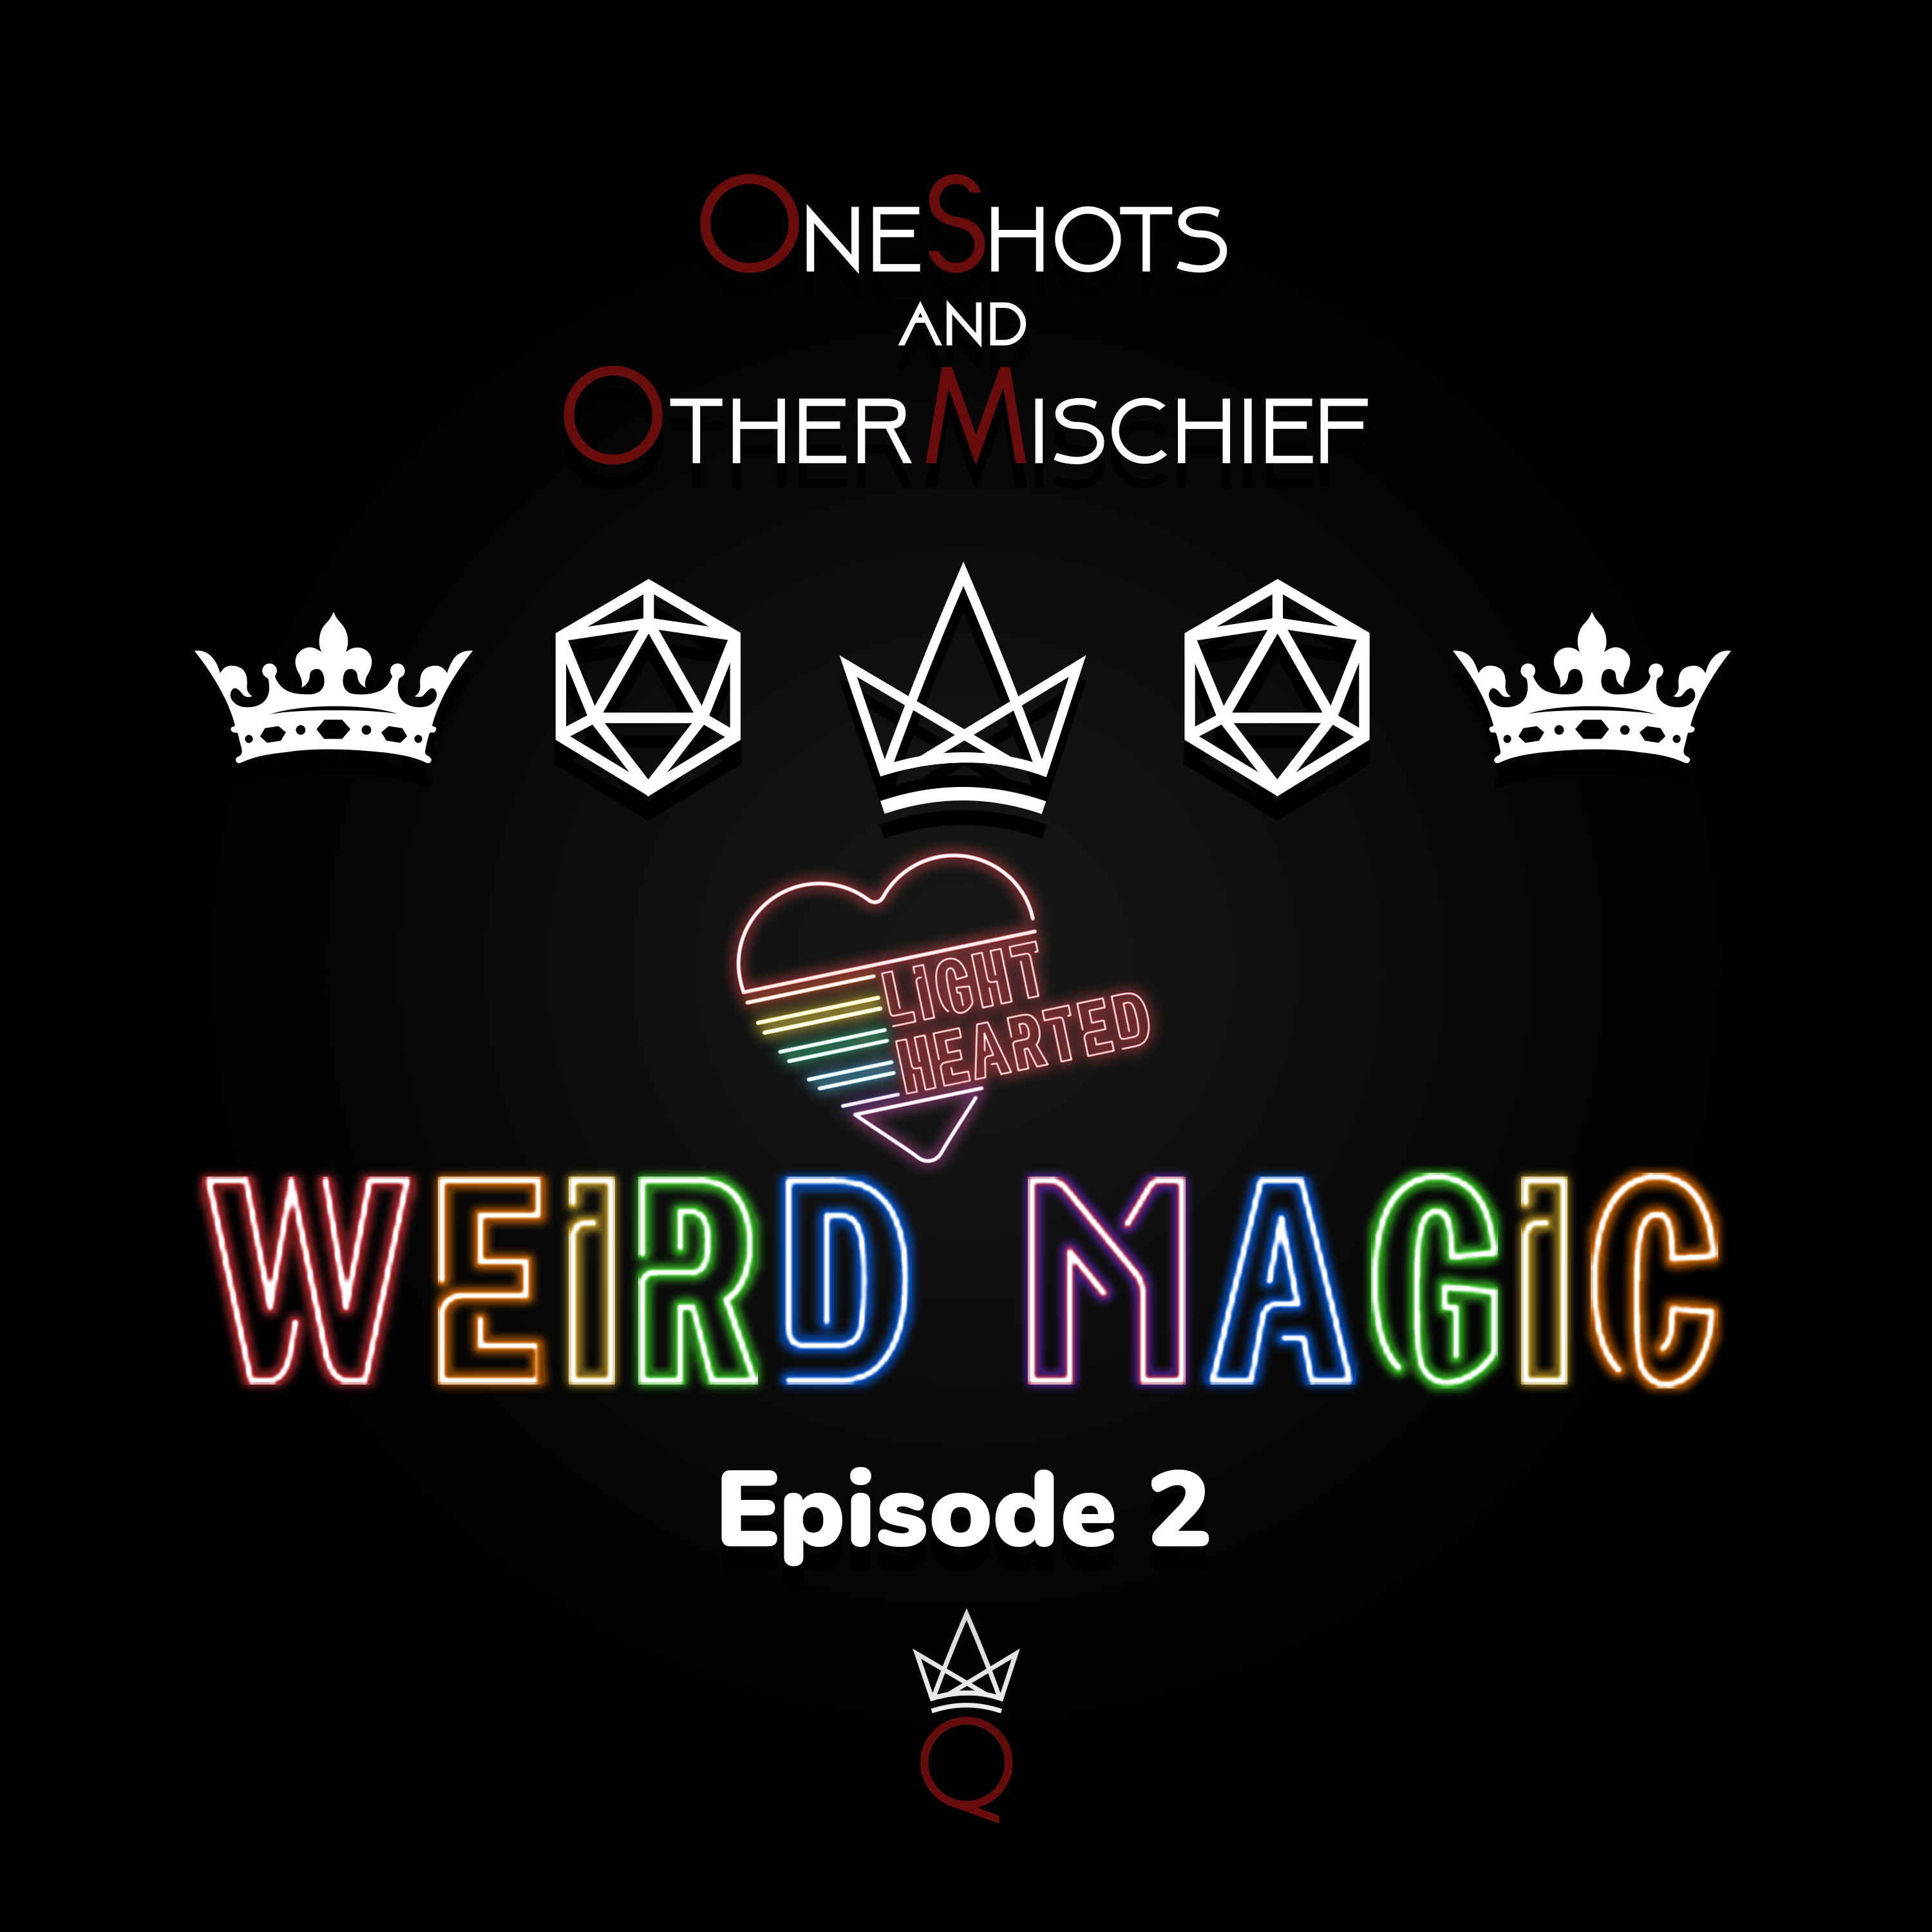 Lighthearted - Weird Magic, Episode 2